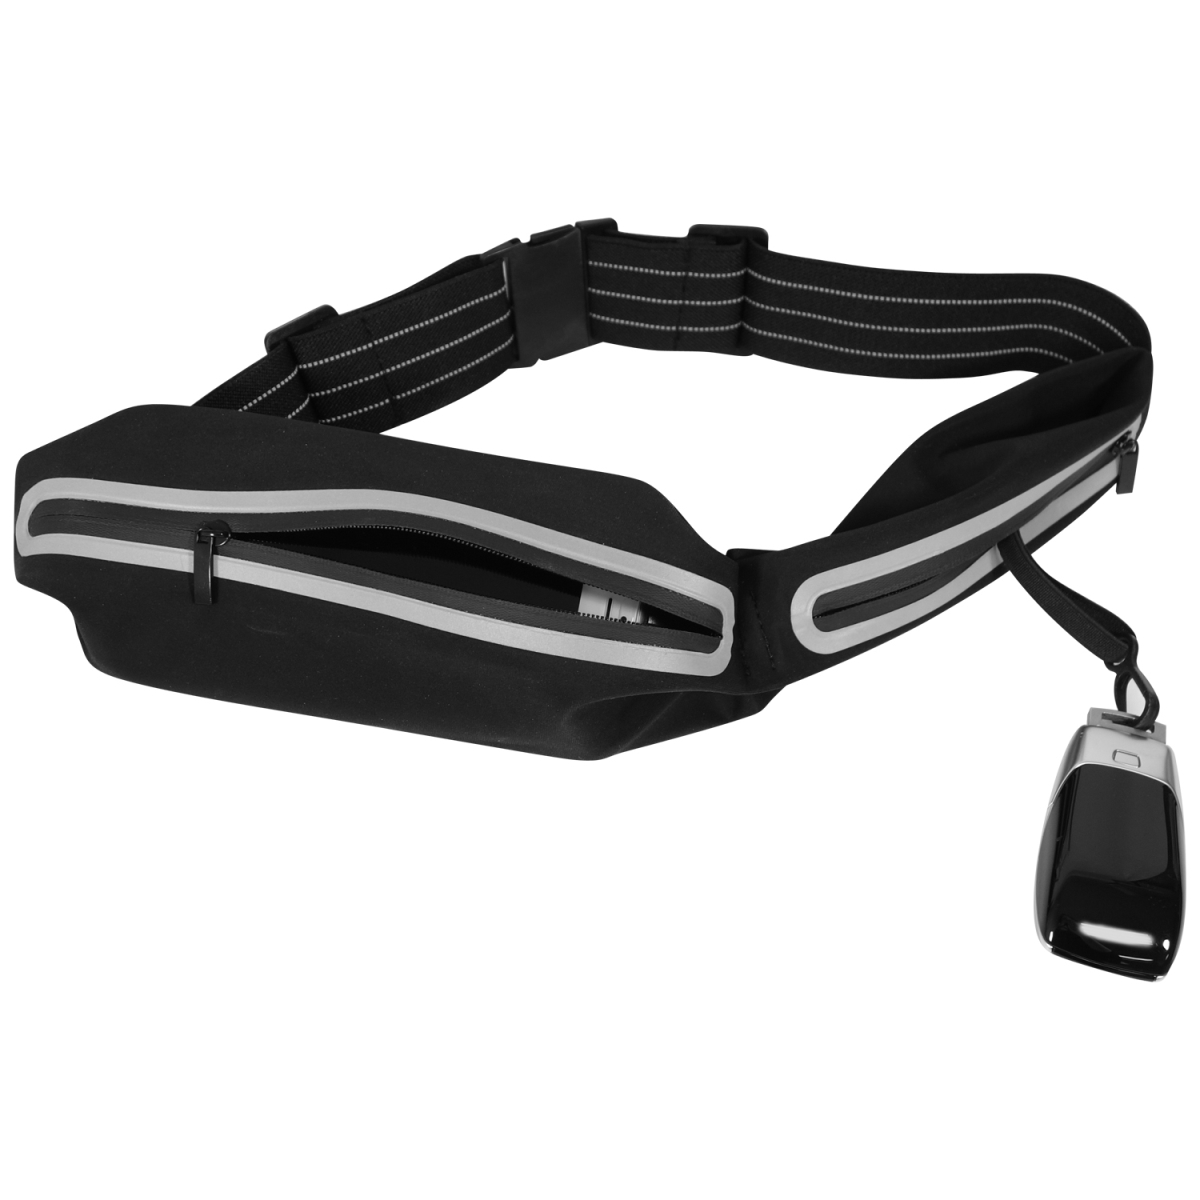 Runbeltstrip Adjustable & Reflective Running Waist Belt With Large Zipper Pocket